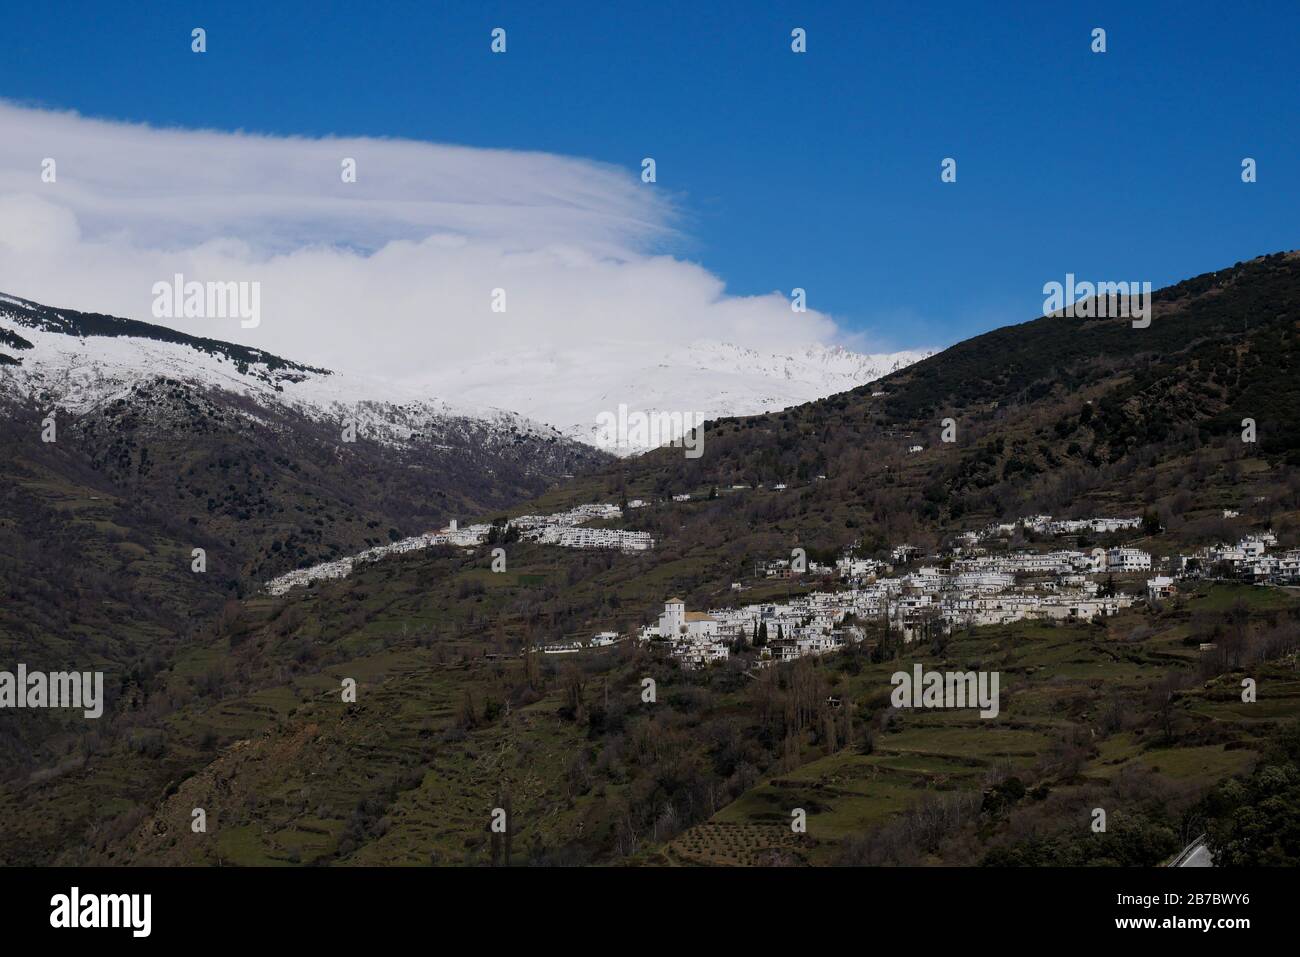 Las Alpujarras - villaggi bianchi nella catena montuosa della Sierra  Nevada, Spagna, con sfondo innevato Foto stock - Alamy